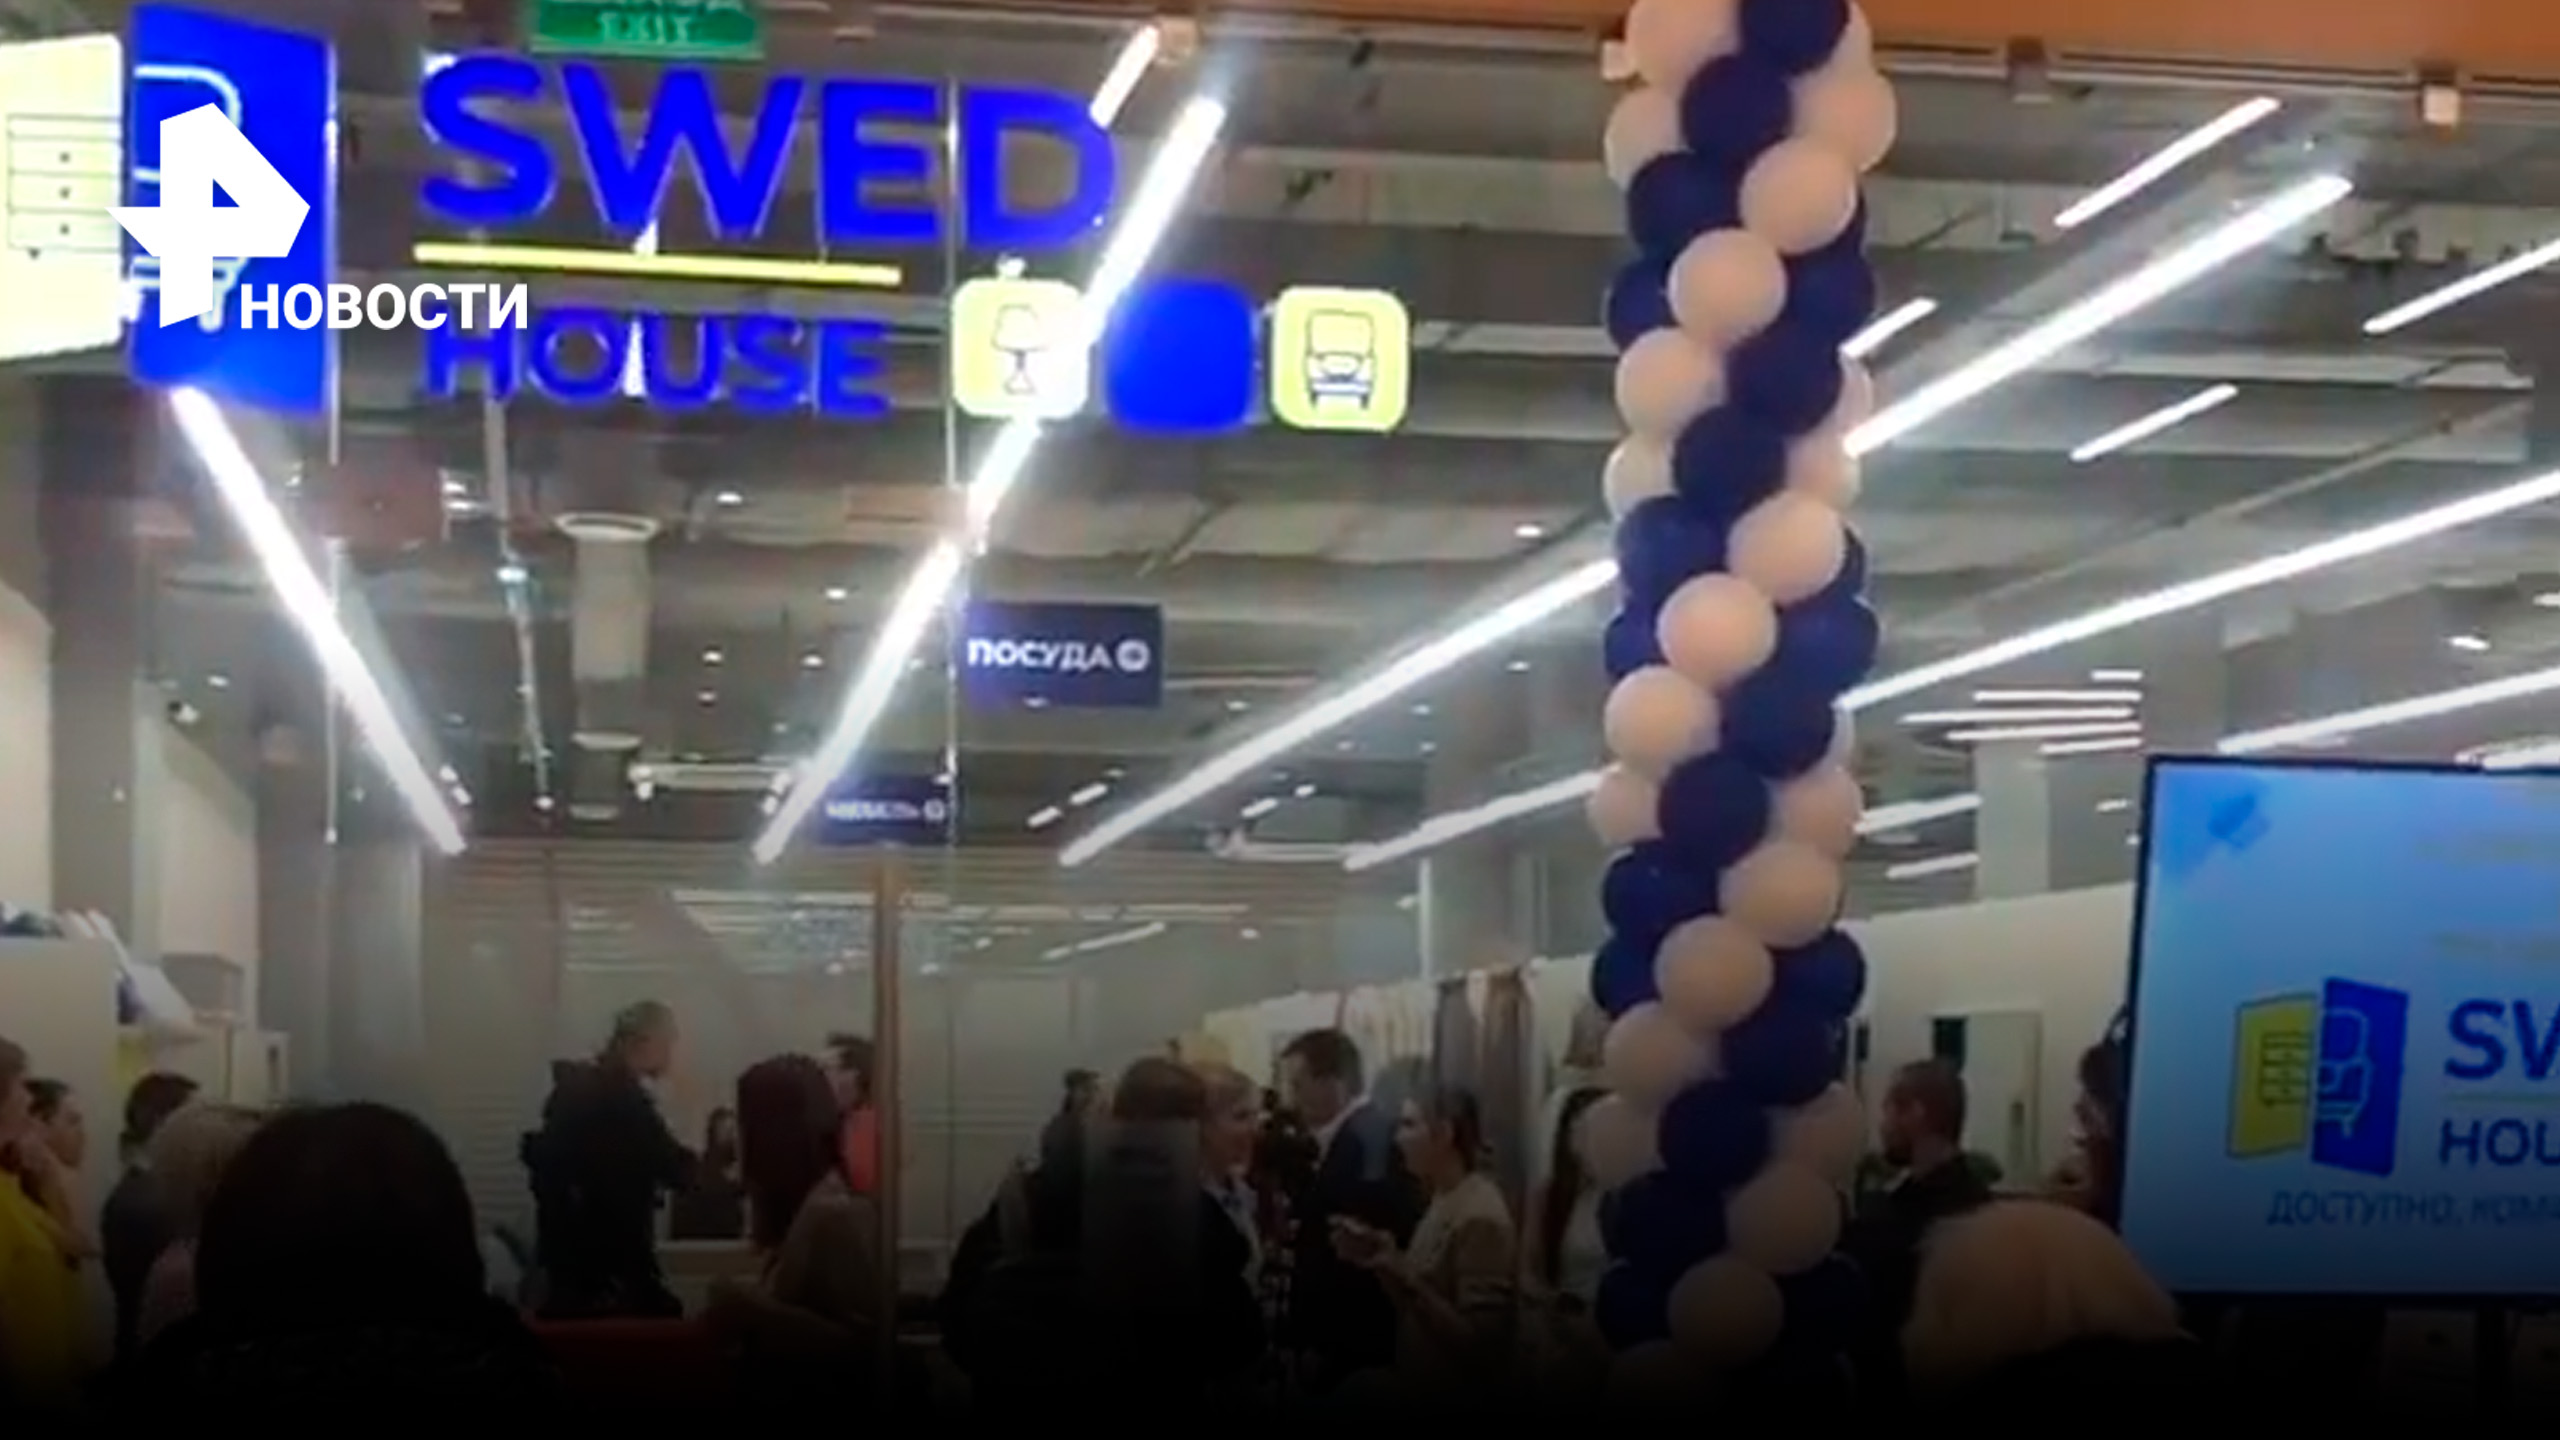 Белорусский аналог IKEA Swed House открылся в столичном ТЦ / РЕН Новости